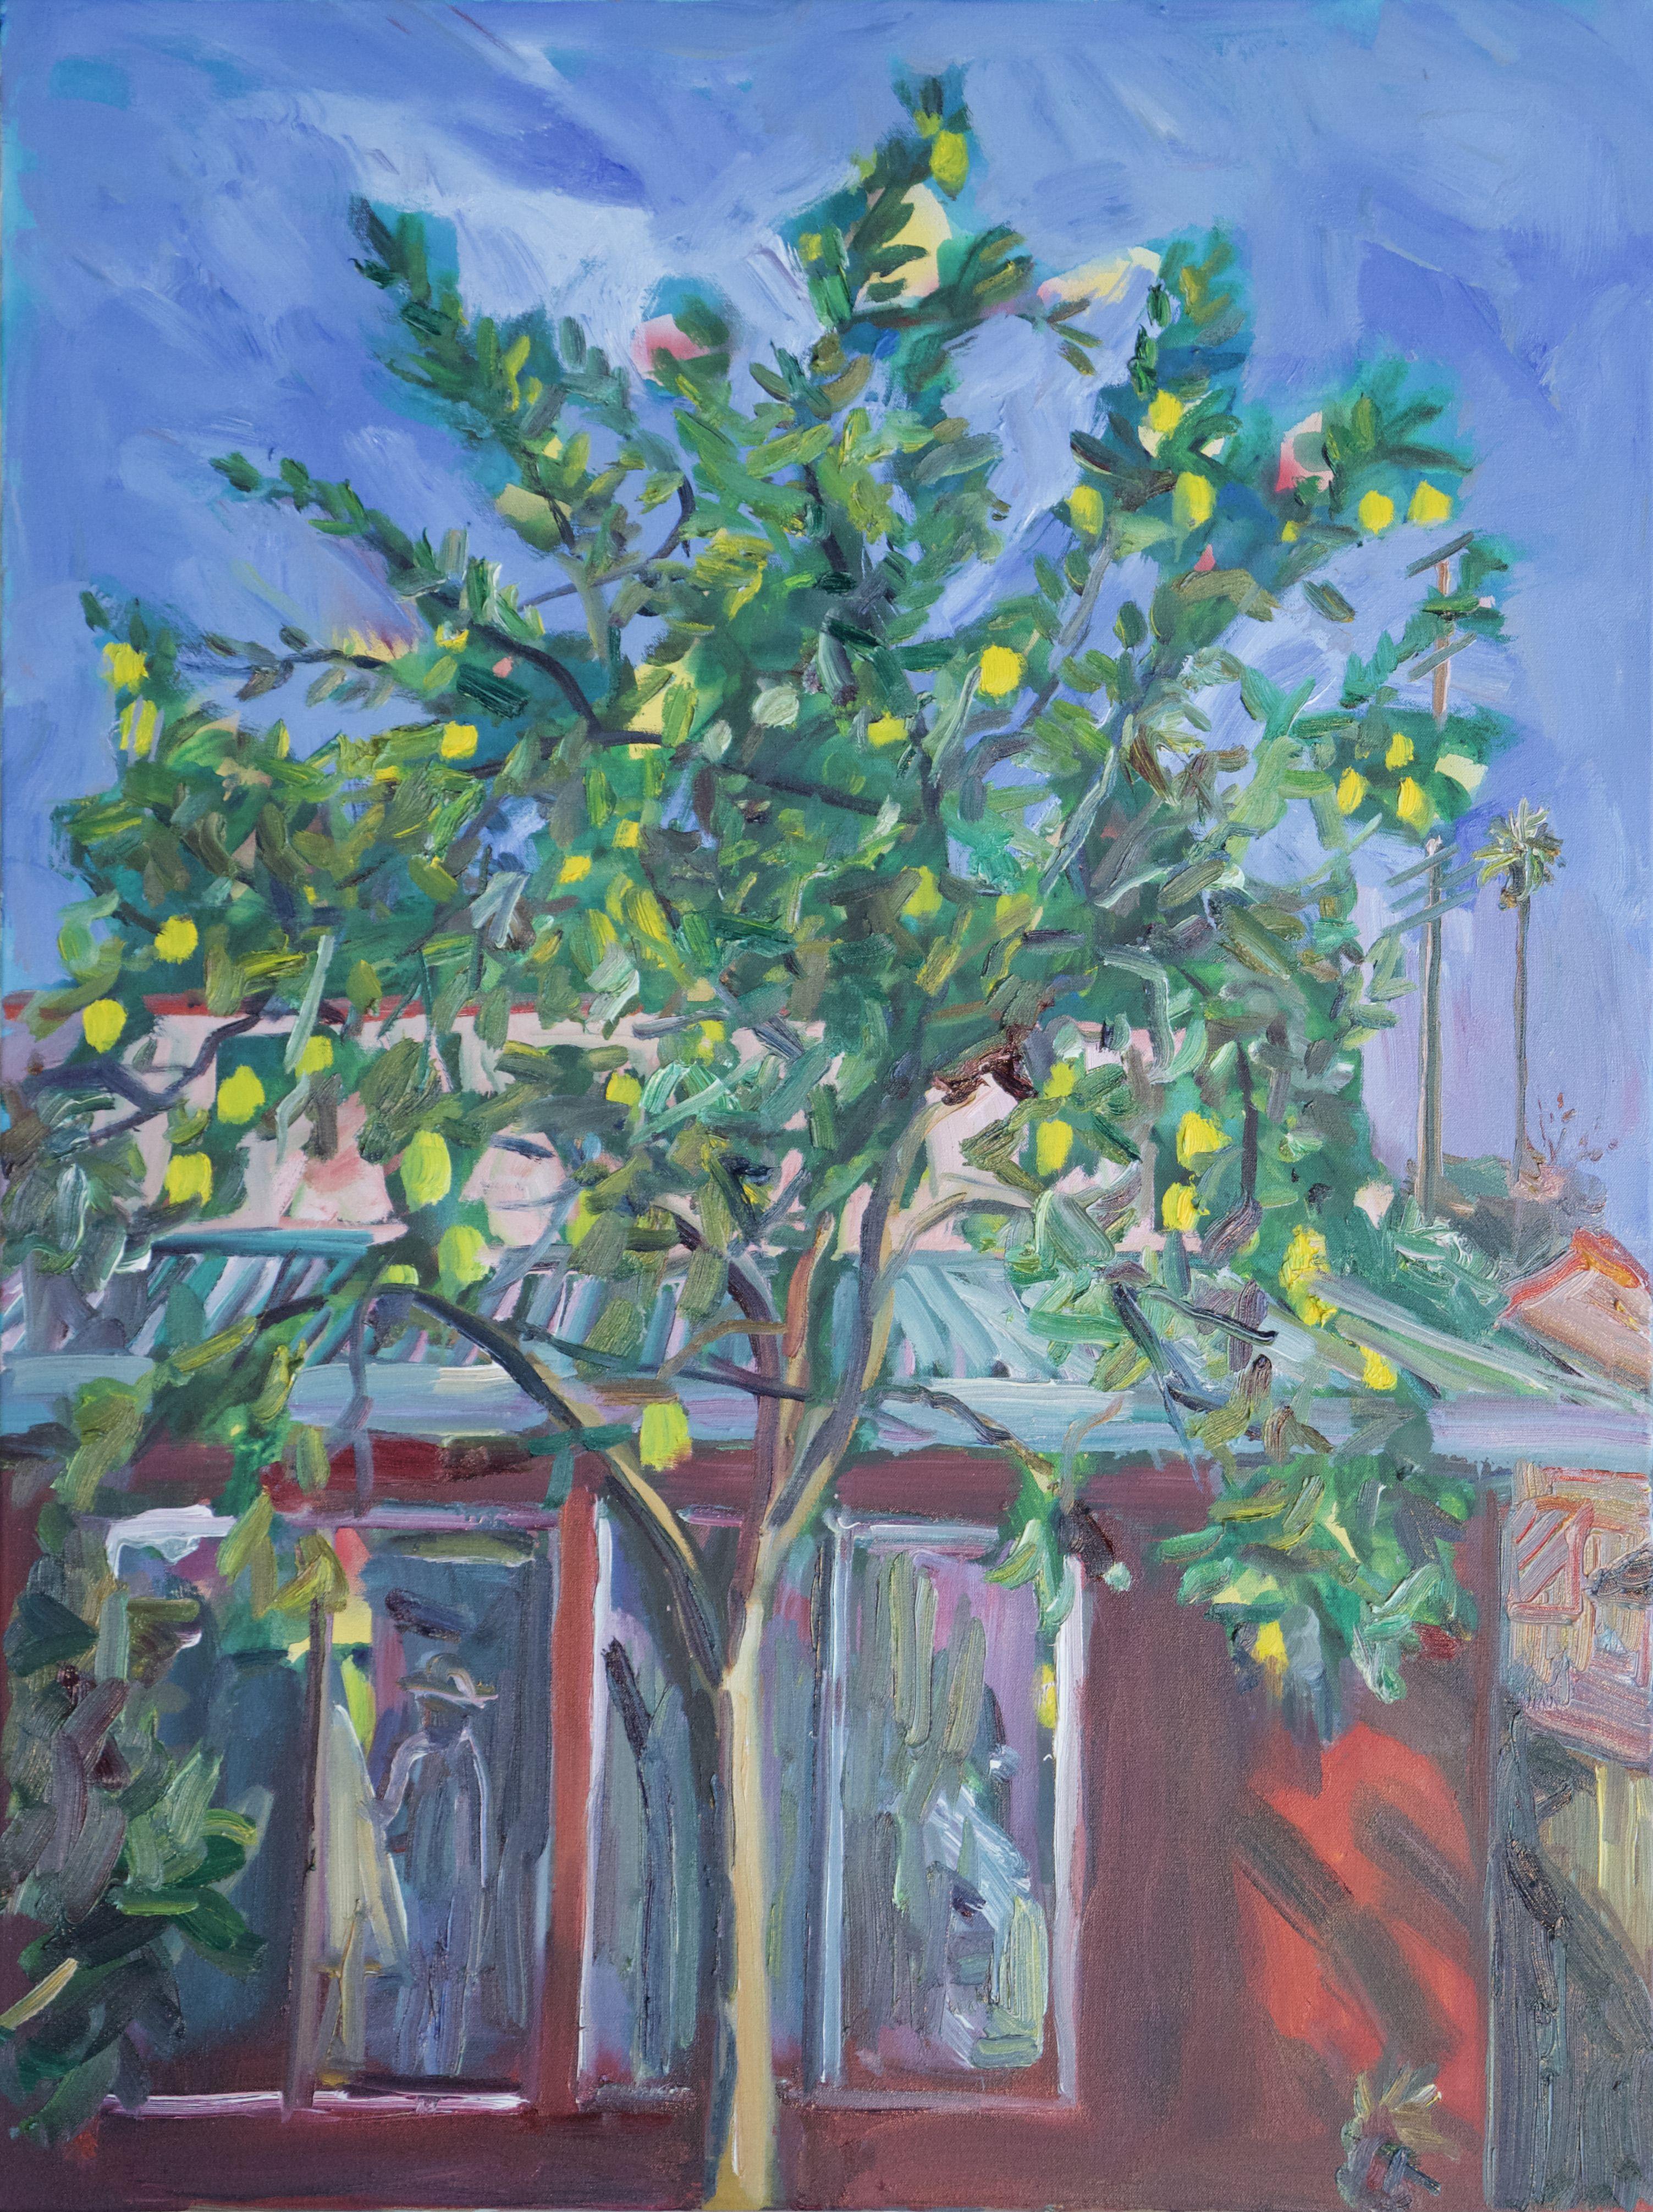 Landscape Painting John Kilduff - Peinture, huile sur toile, arbre de citronnier dans la cour